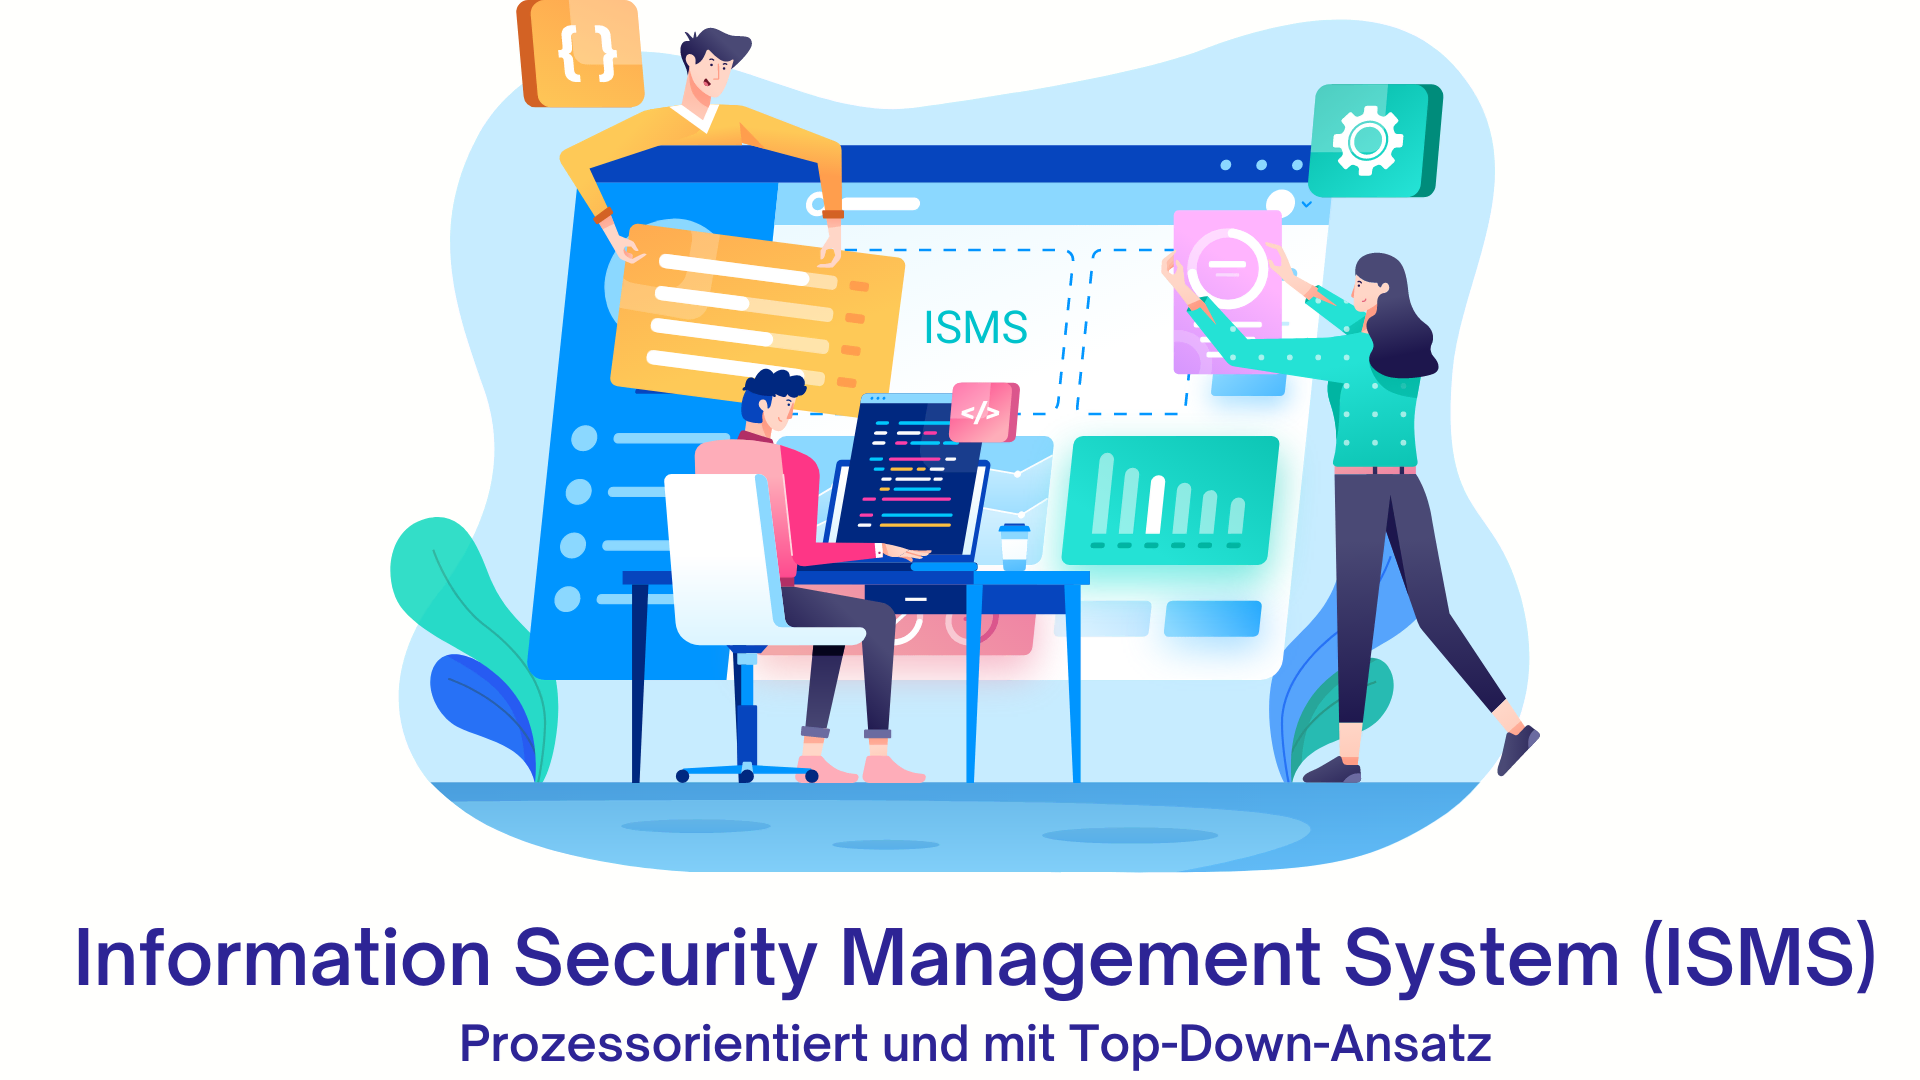 Information Security Management System (ISMS): Prozessorientiert und mit Top-Down-Ansatz